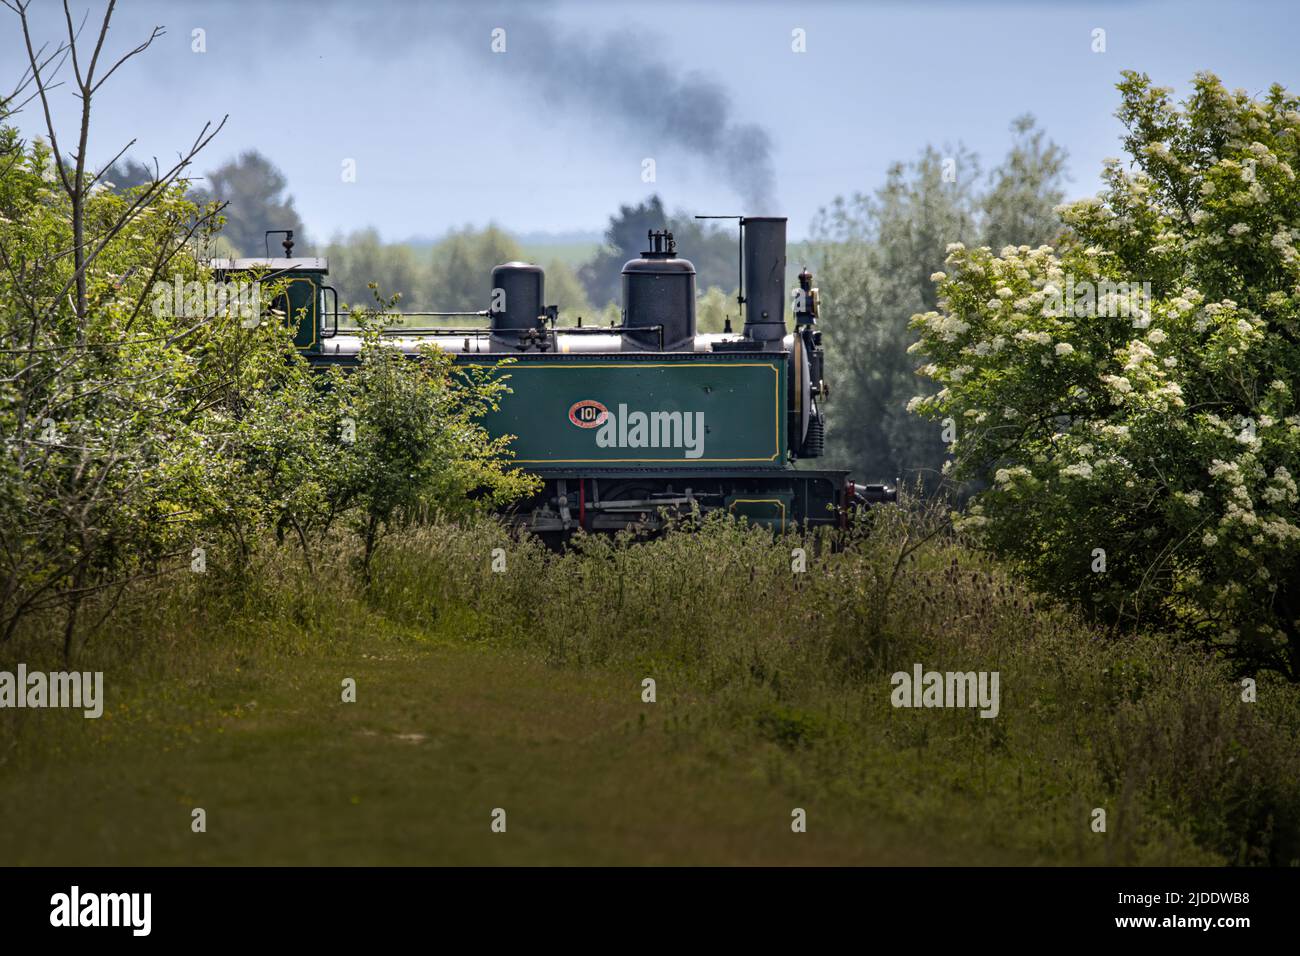 Train de la baie de Somme, Lokomotive à vapeur Stockfoto